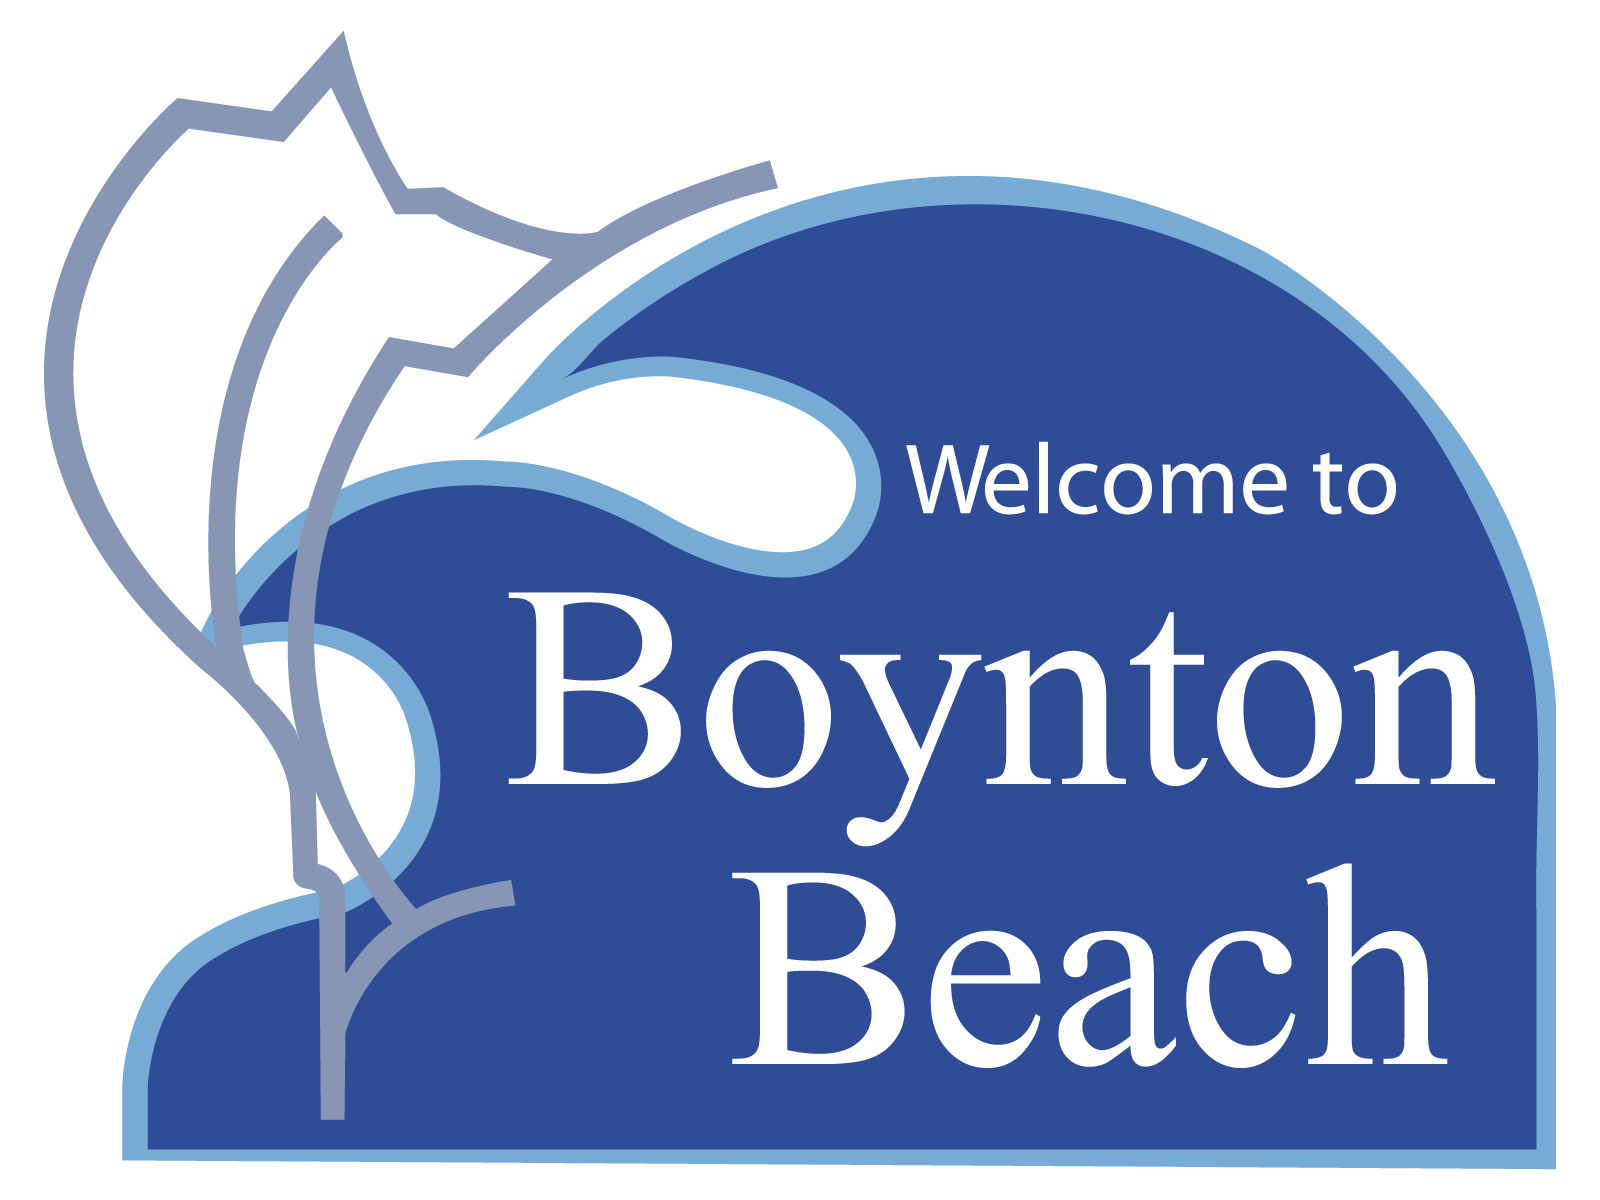 Hit-and-Runs in Boynton Beach, Florida